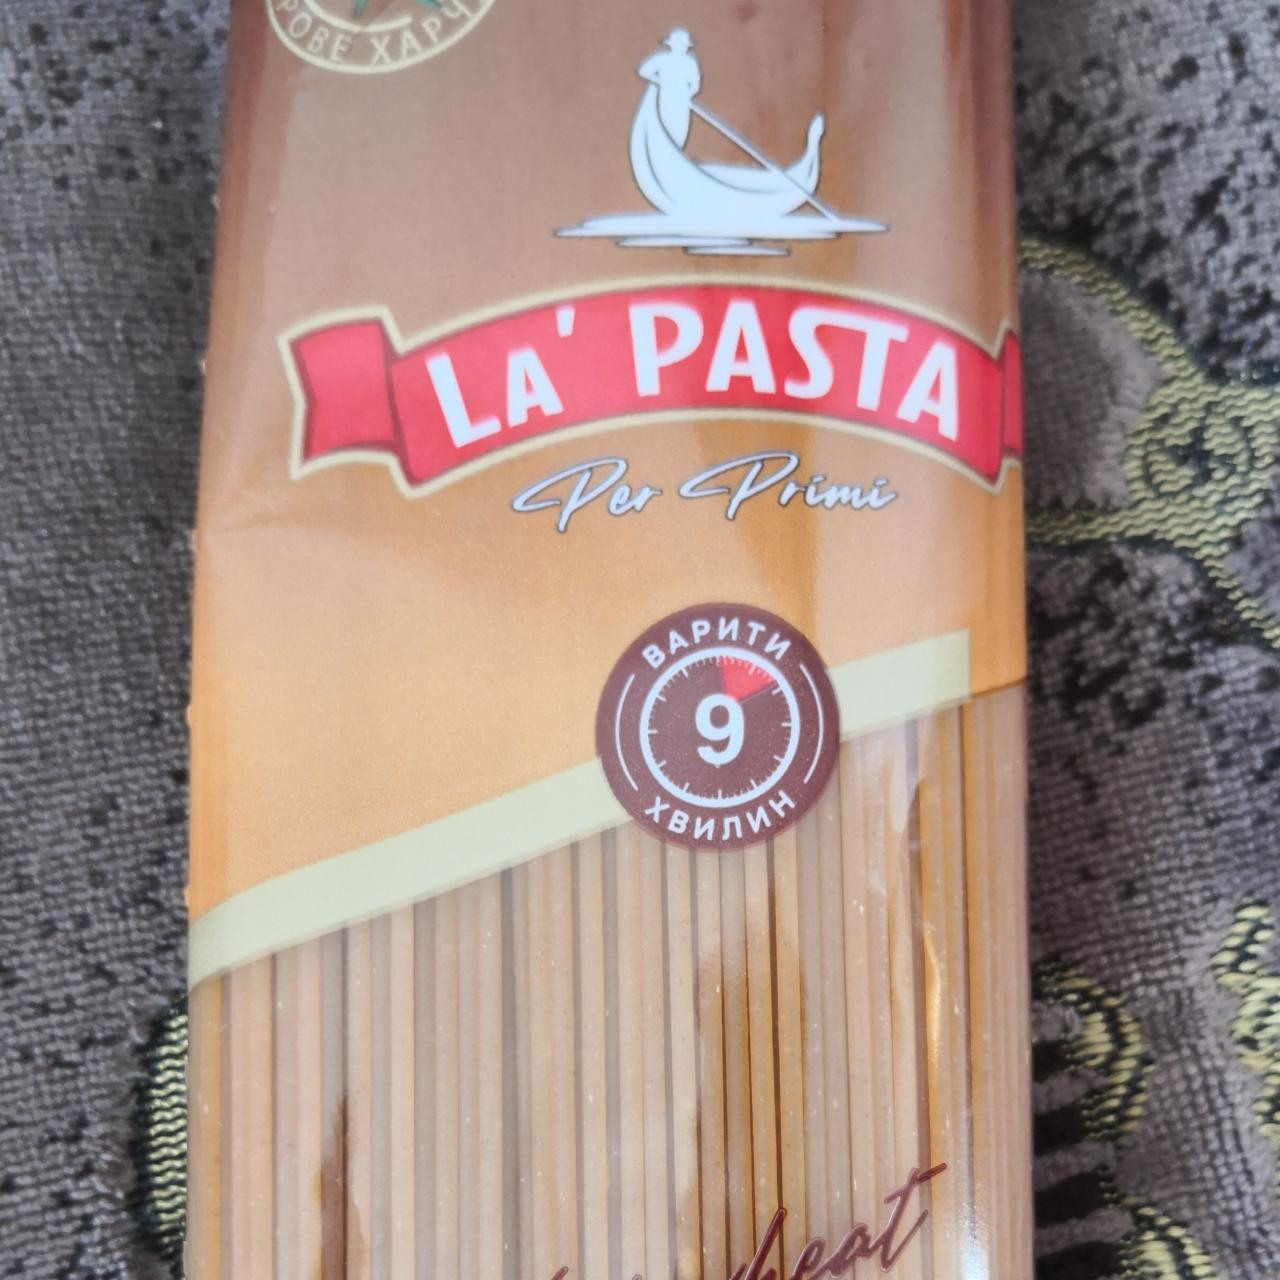 Фото - Cпагетти цельнозерновые с твердых сортов пшеницы Per Primi La Pasta